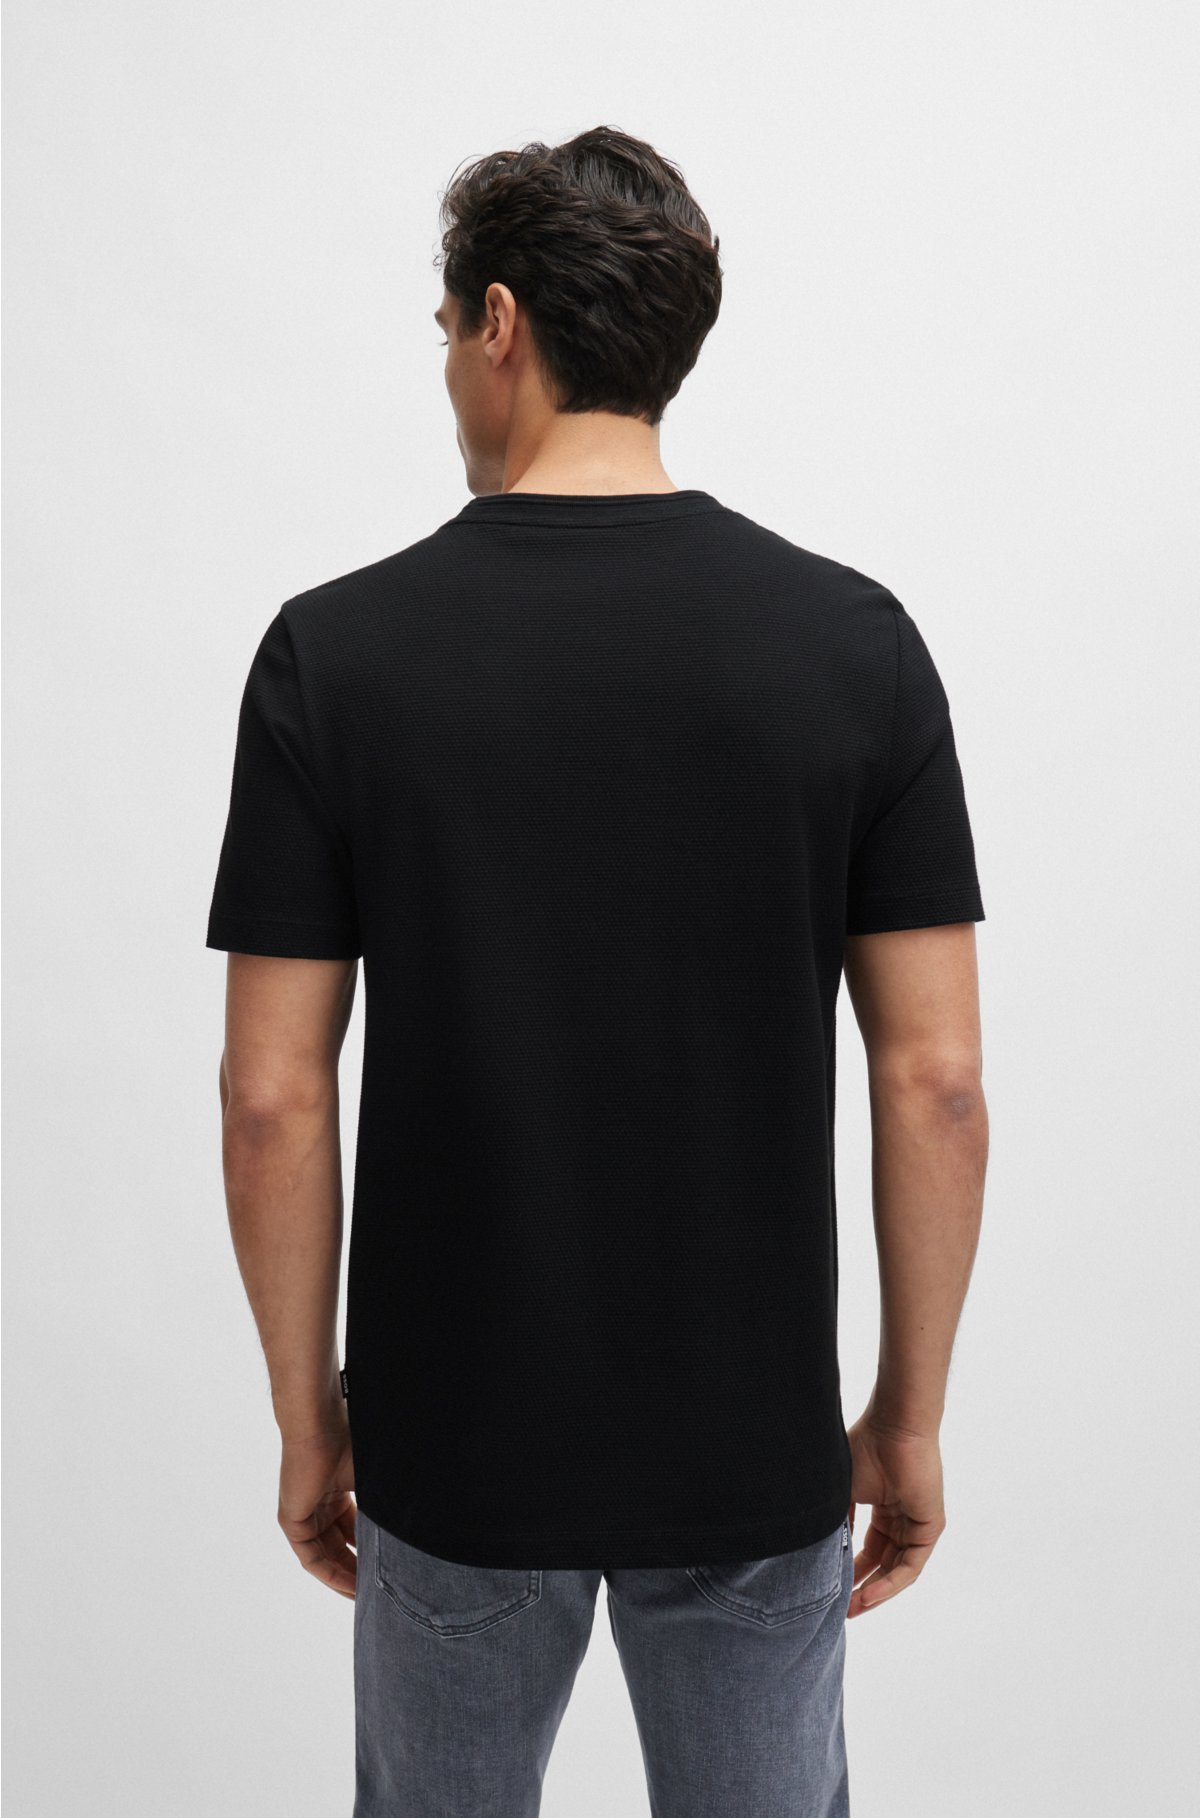 Cotton-blend T-shirt with bubble-jacquard structure, Black